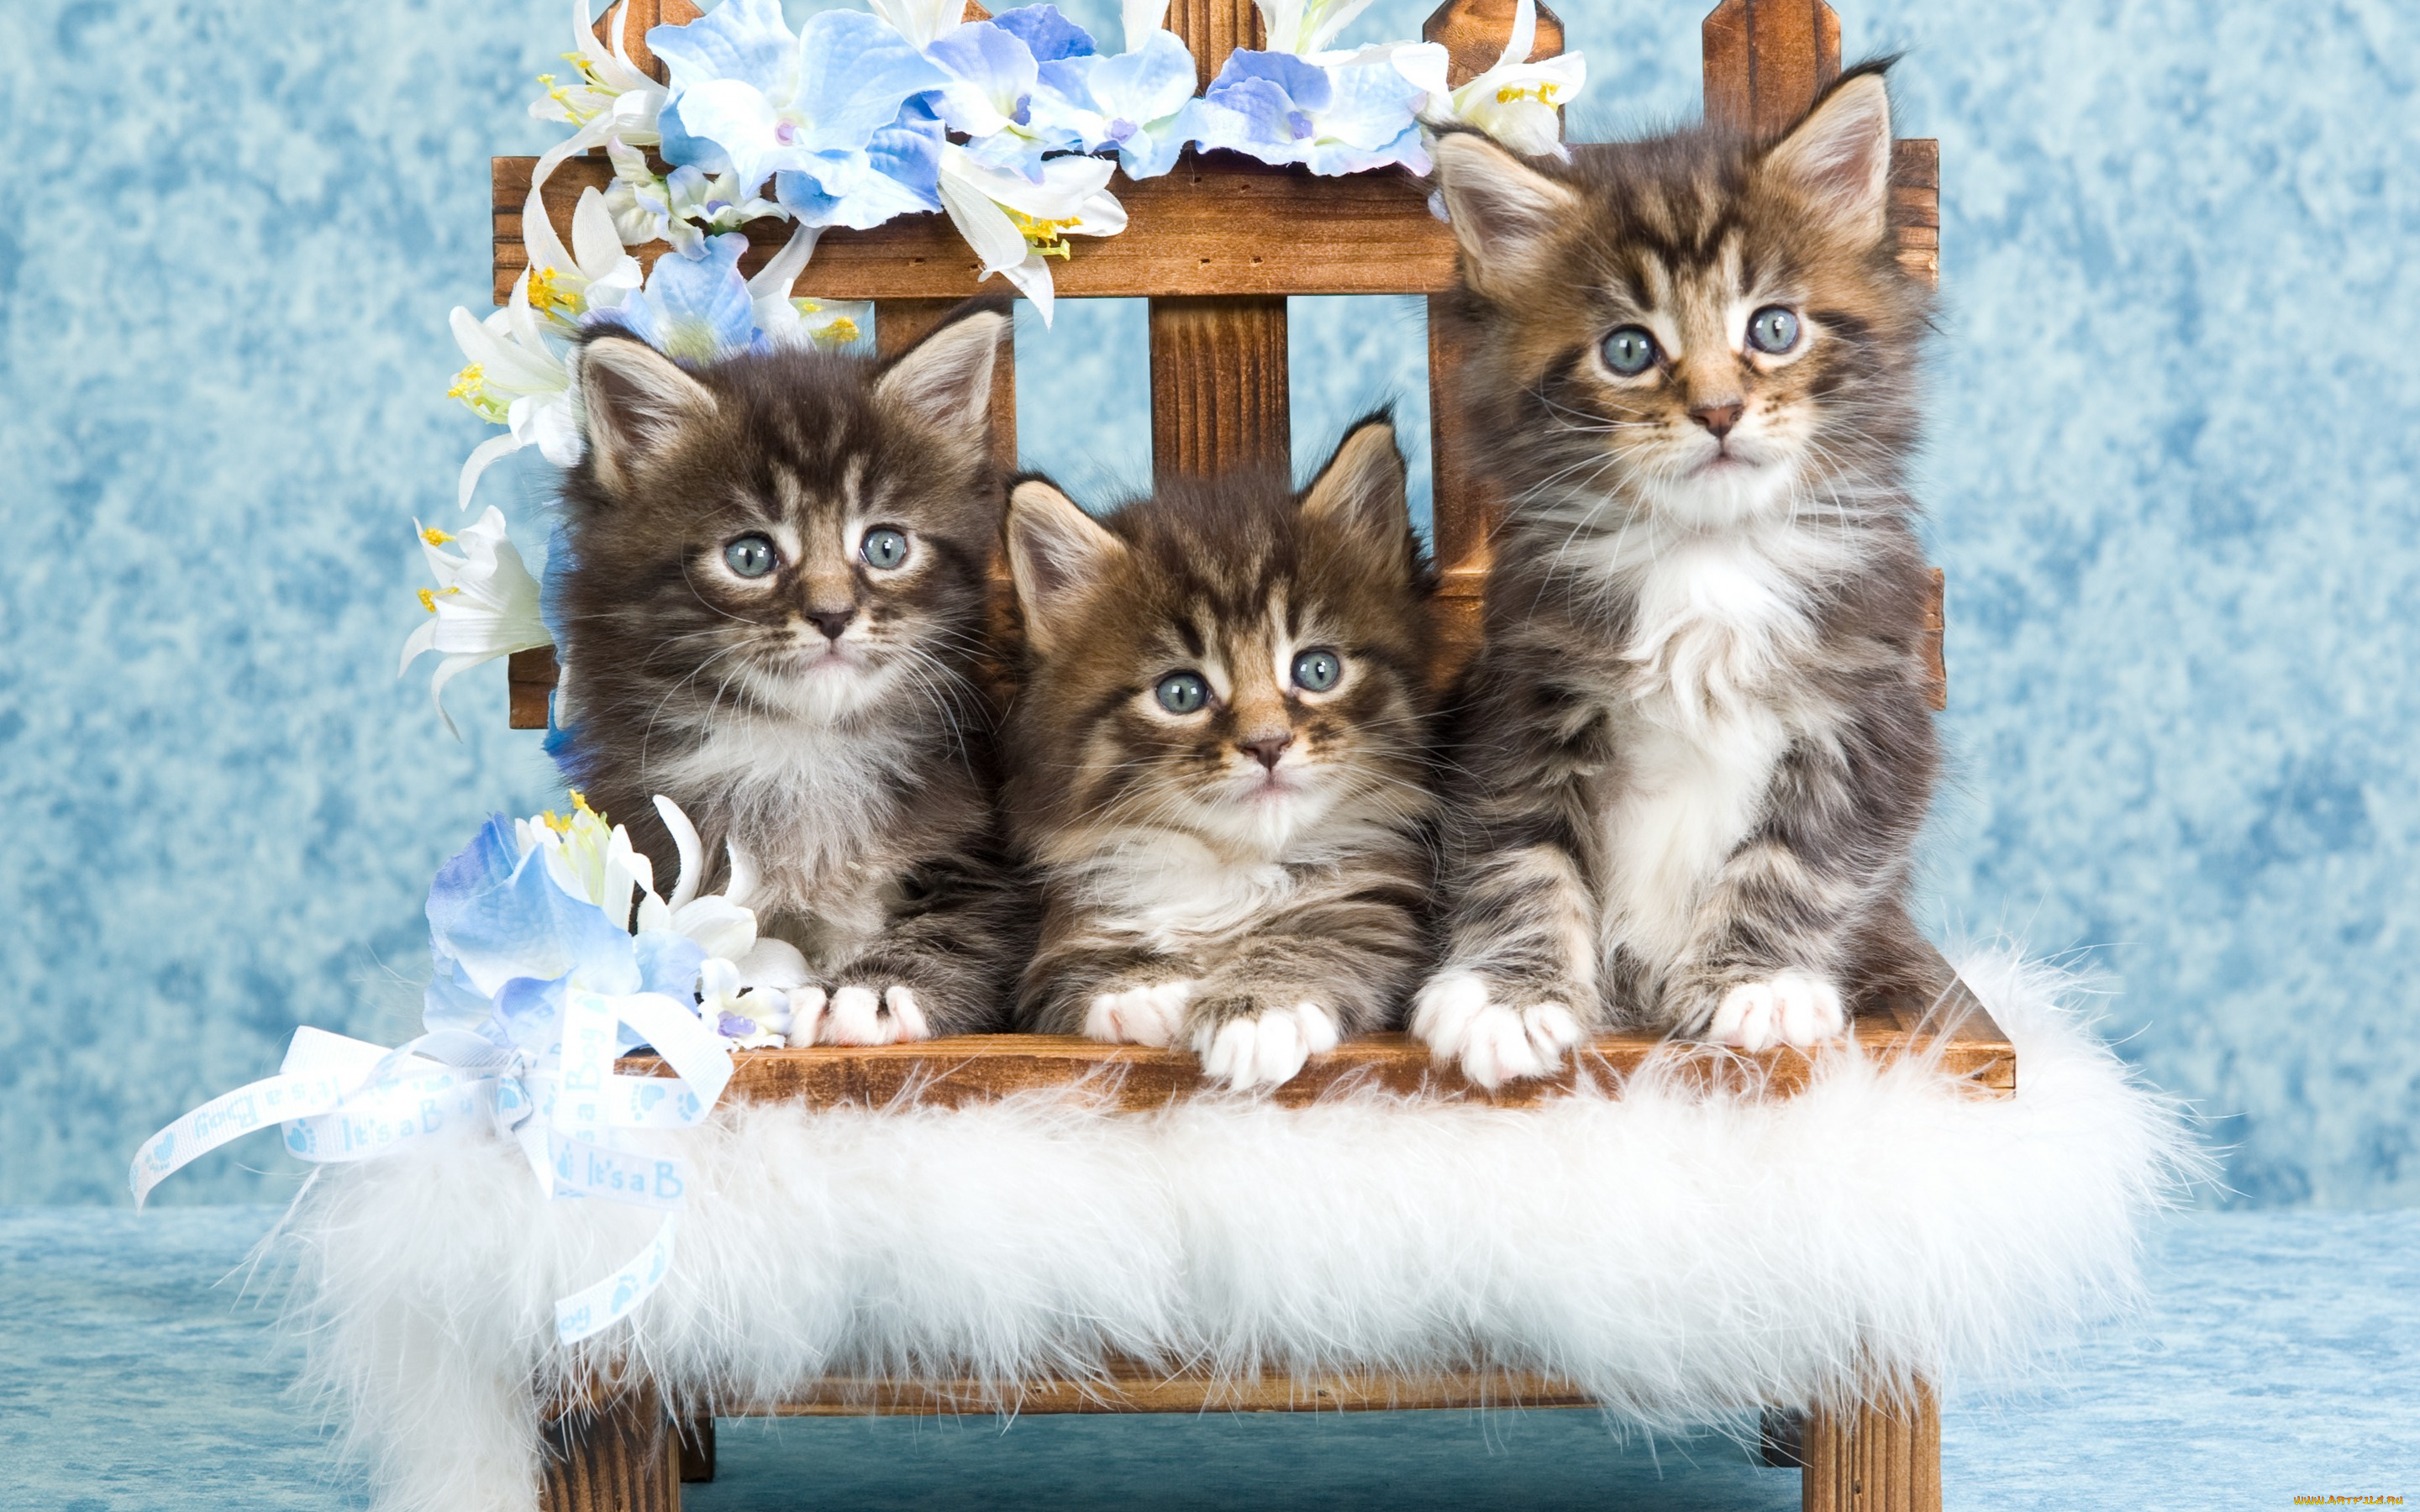 животные, коты, милые, серые, котята, пушистые, полосатые, кошки, голубой, фон, мех, цветы, ящик, забор, деревянный